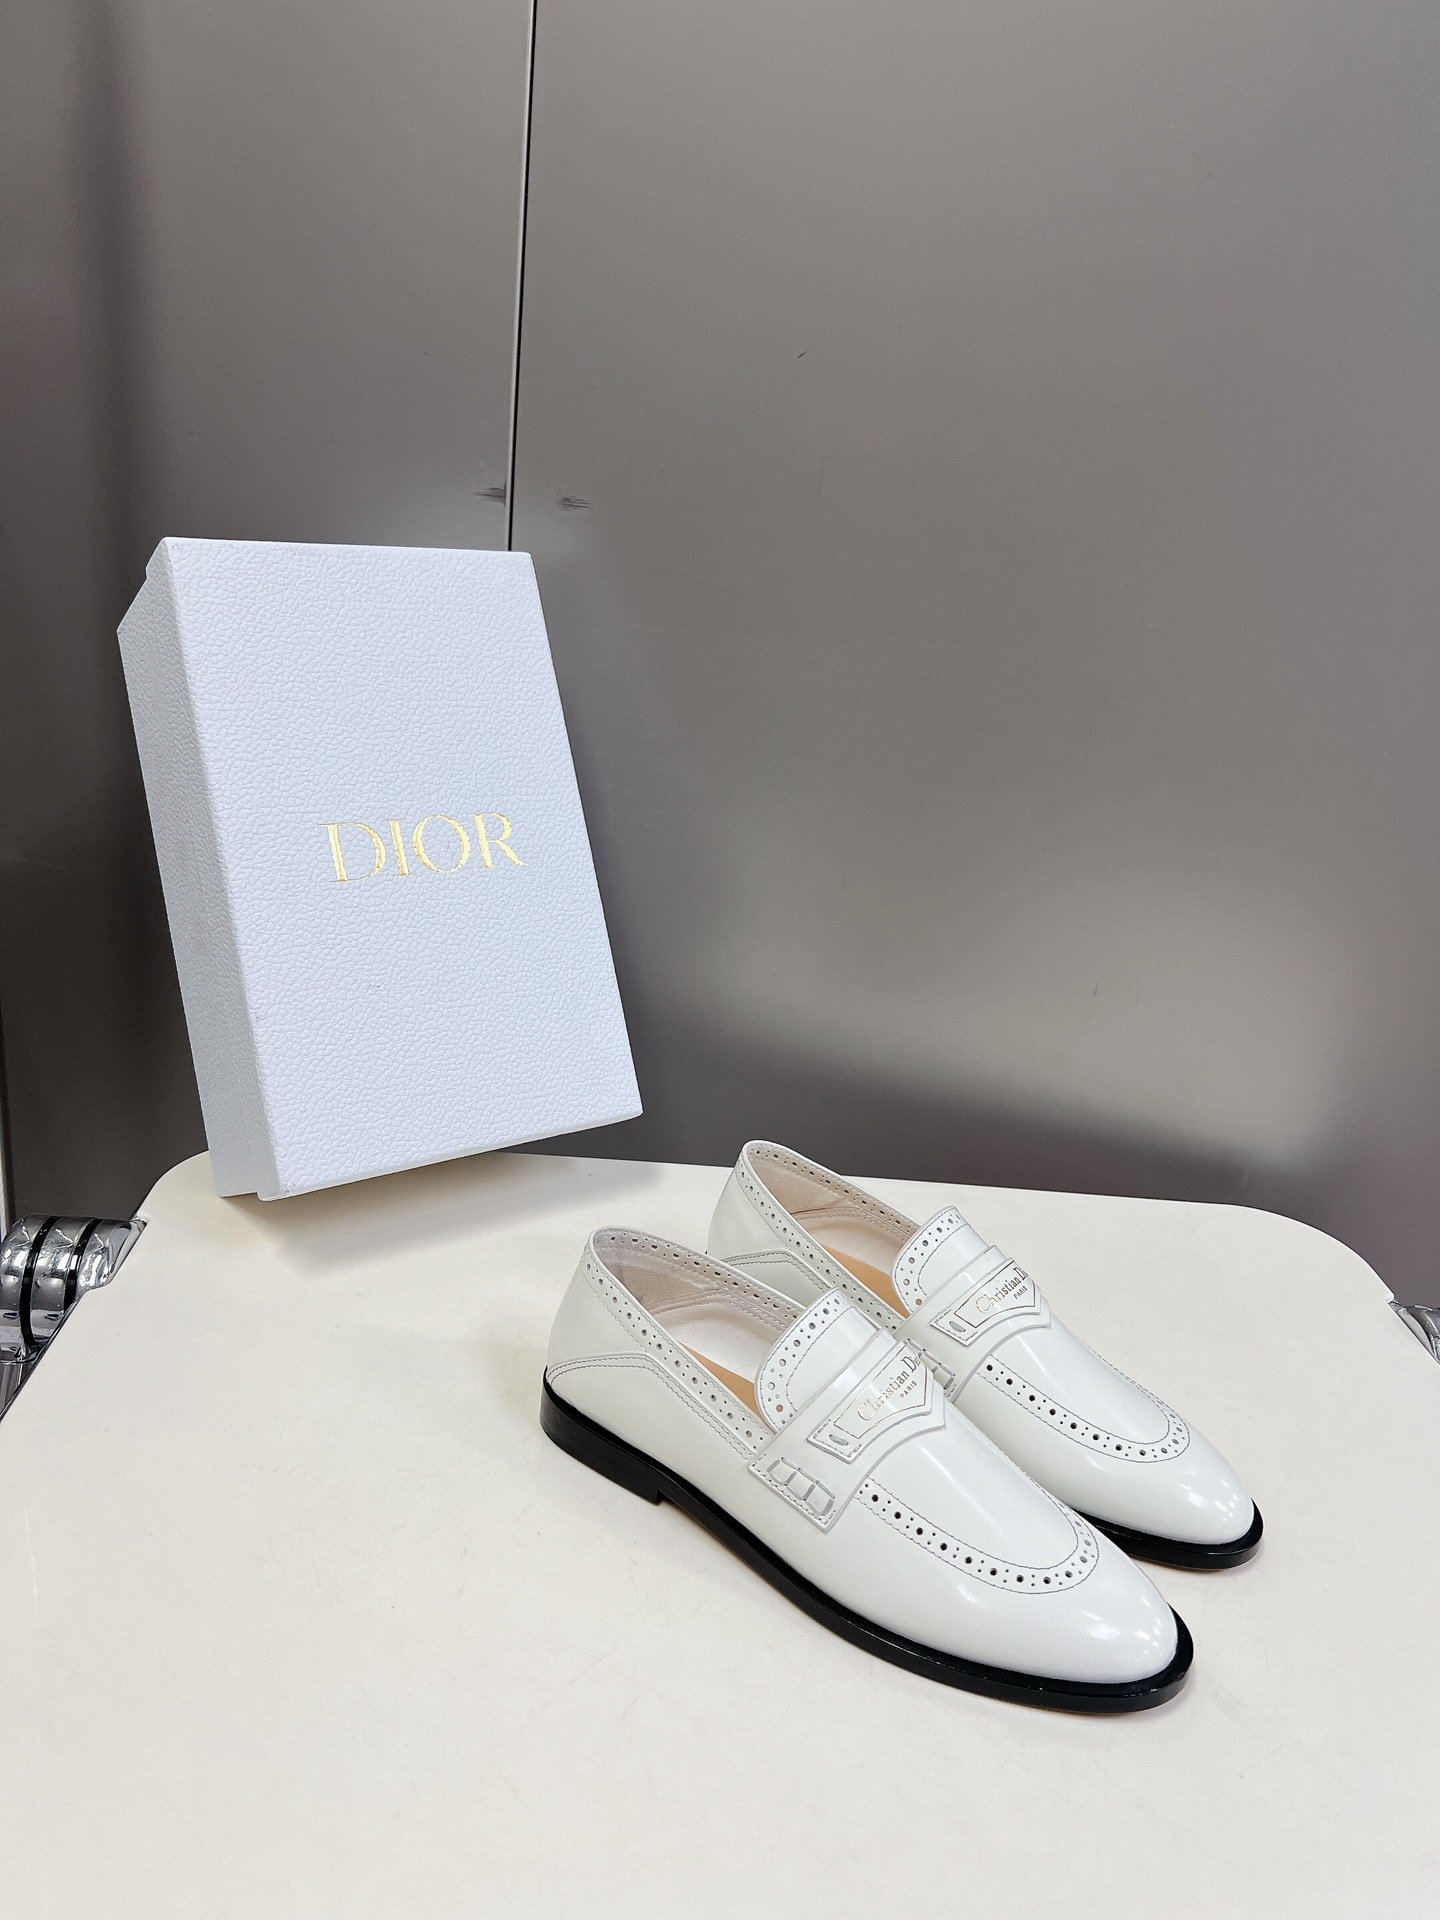 Dior4迪奥新款英伦风中性雕花小皮鞋乐福鞋顶级品质版型超正复古时尚经典单品巴黎时装周第一场分量十足的大